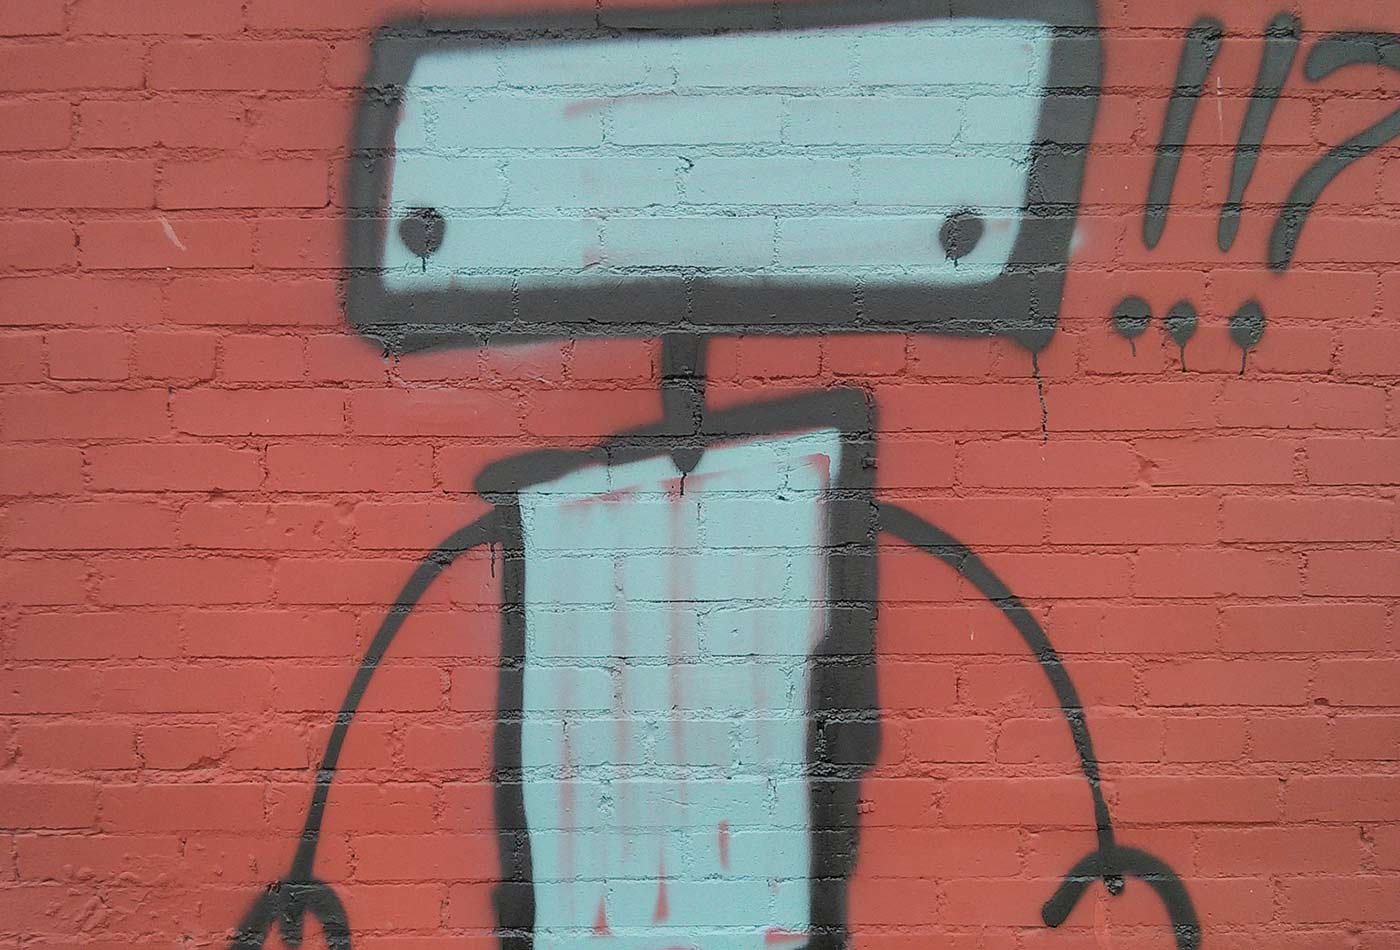 Robot graffiti.